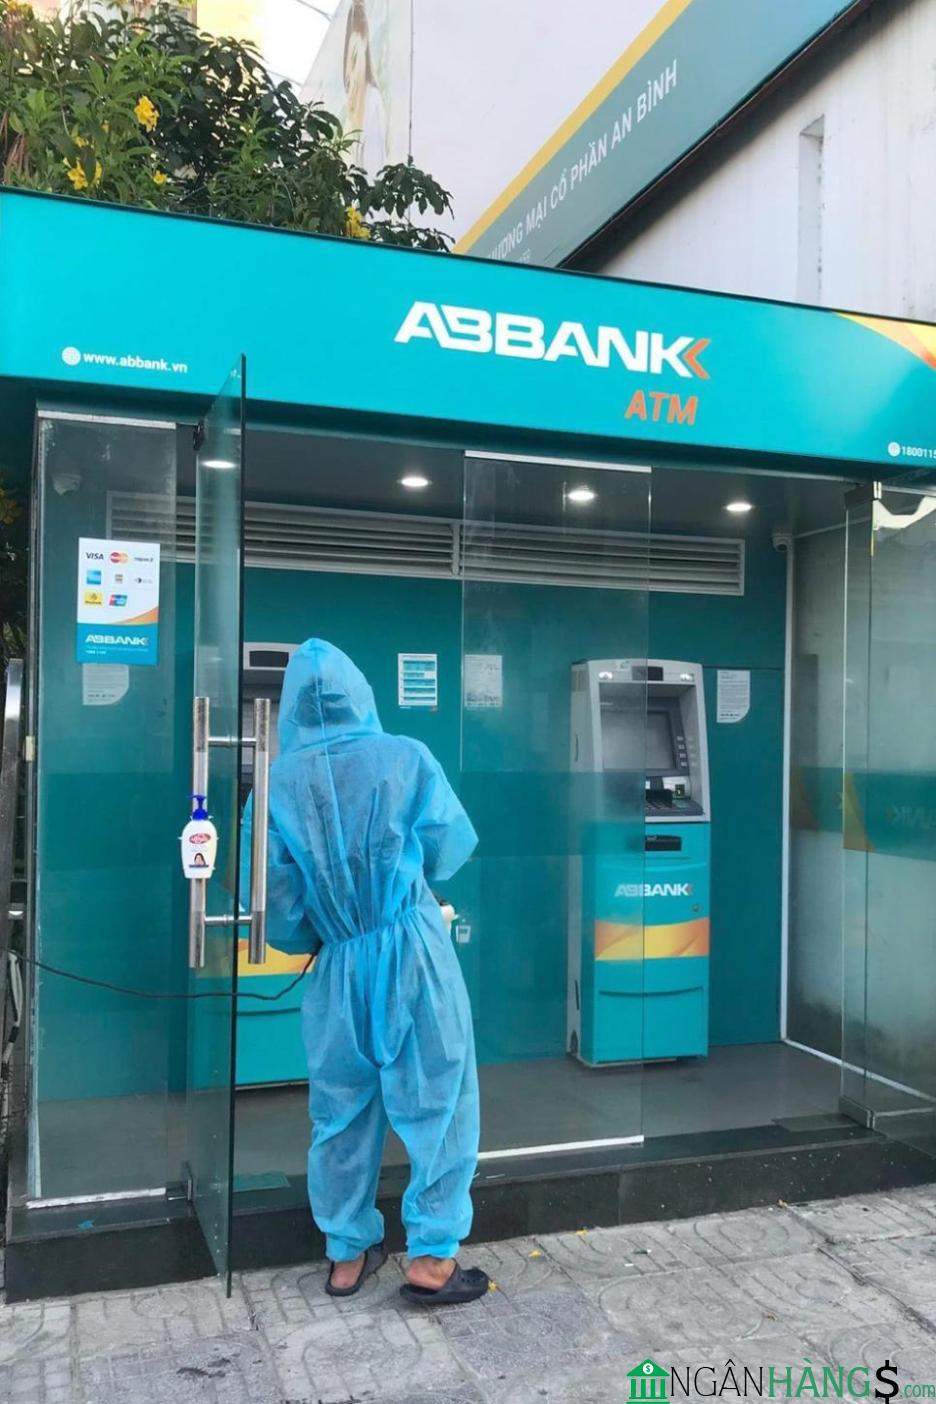 Ảnh Cây ATM ngân hàng An Bình ABBank A3- C1 Quang Trung 1